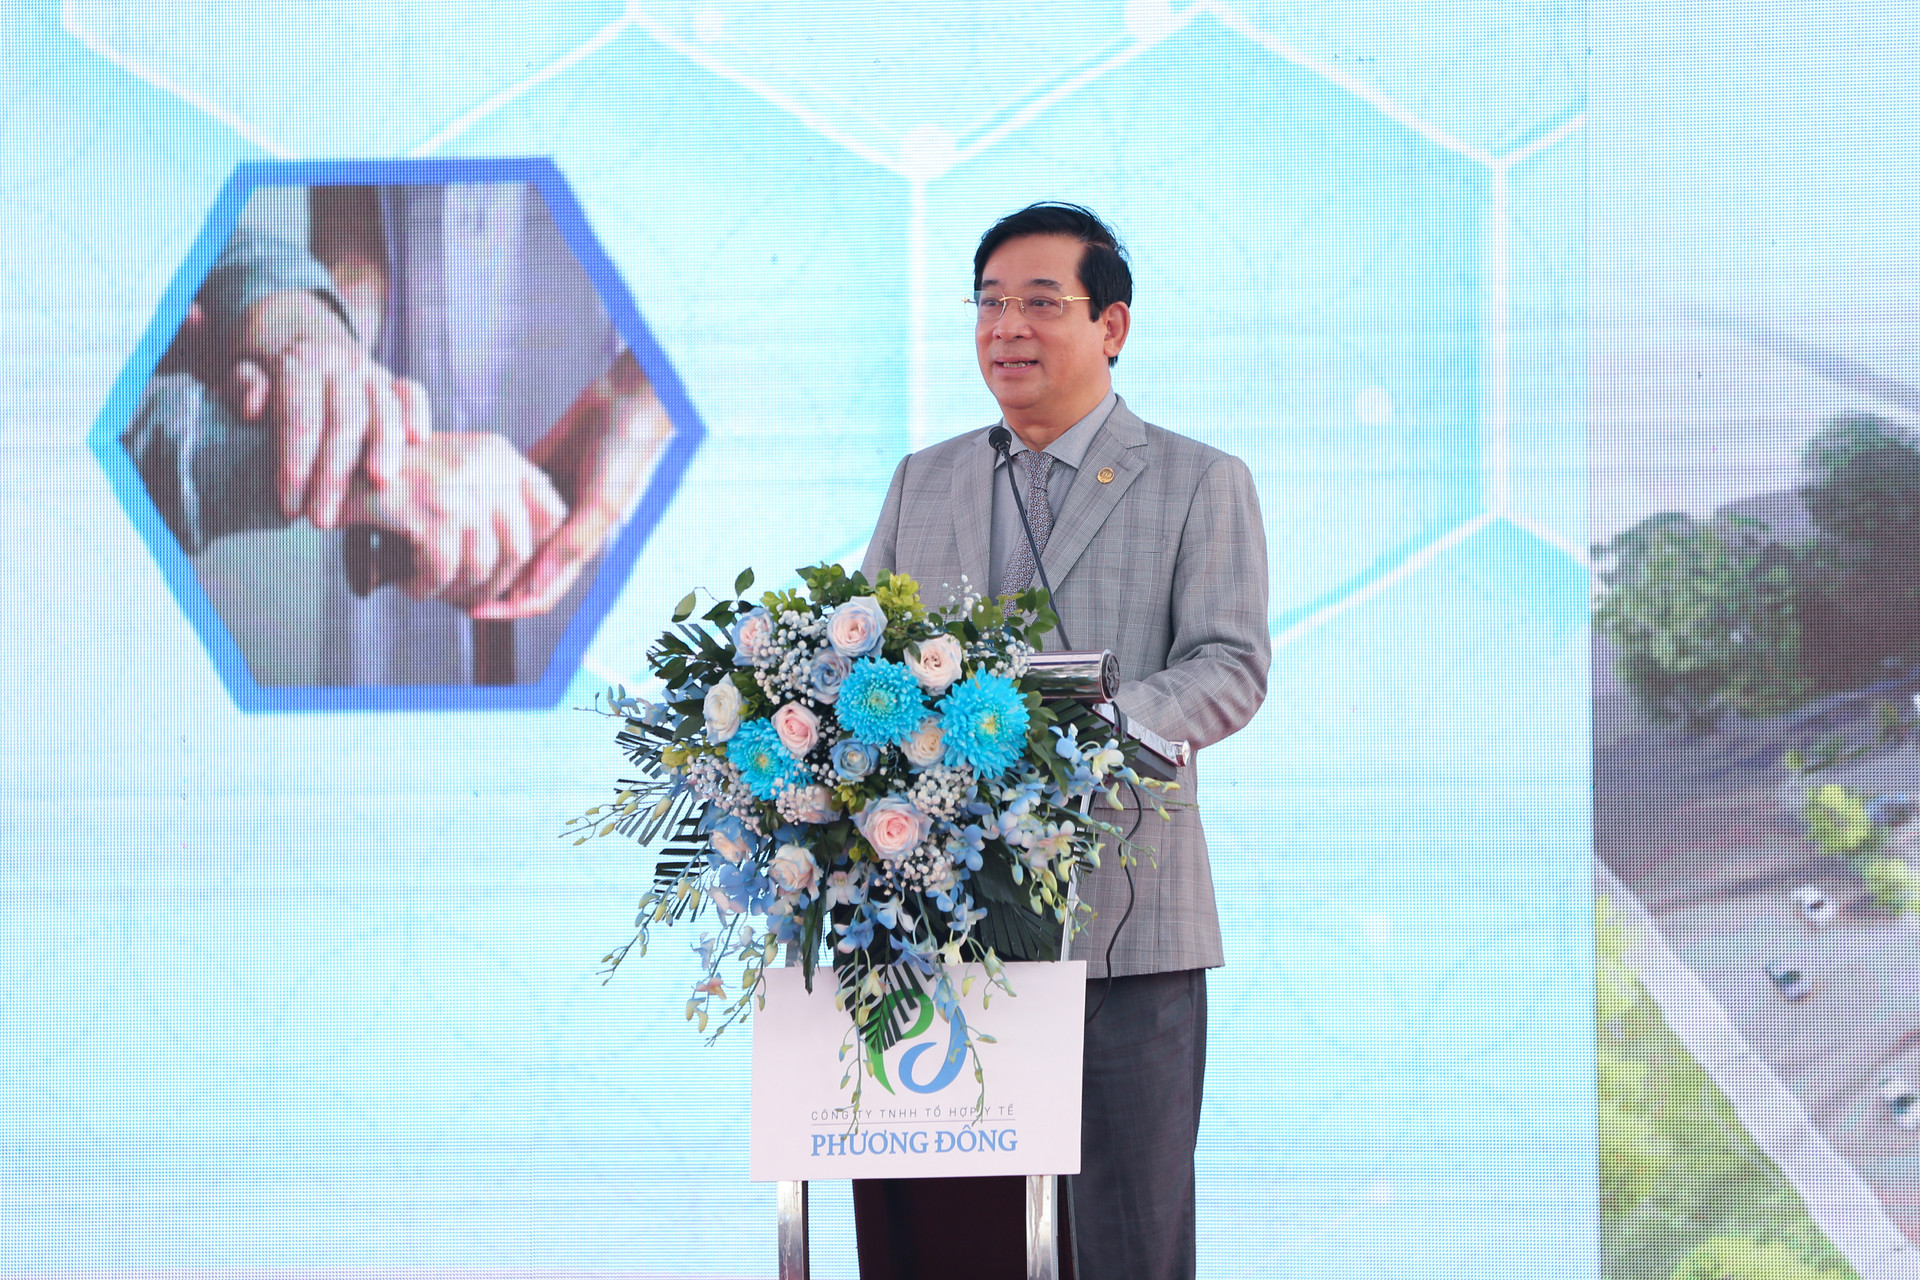 Chính thức khởi công xây dựng viện dưỡng lão theo mô hình Nhật Bản đầu tiên tại Hà Nội